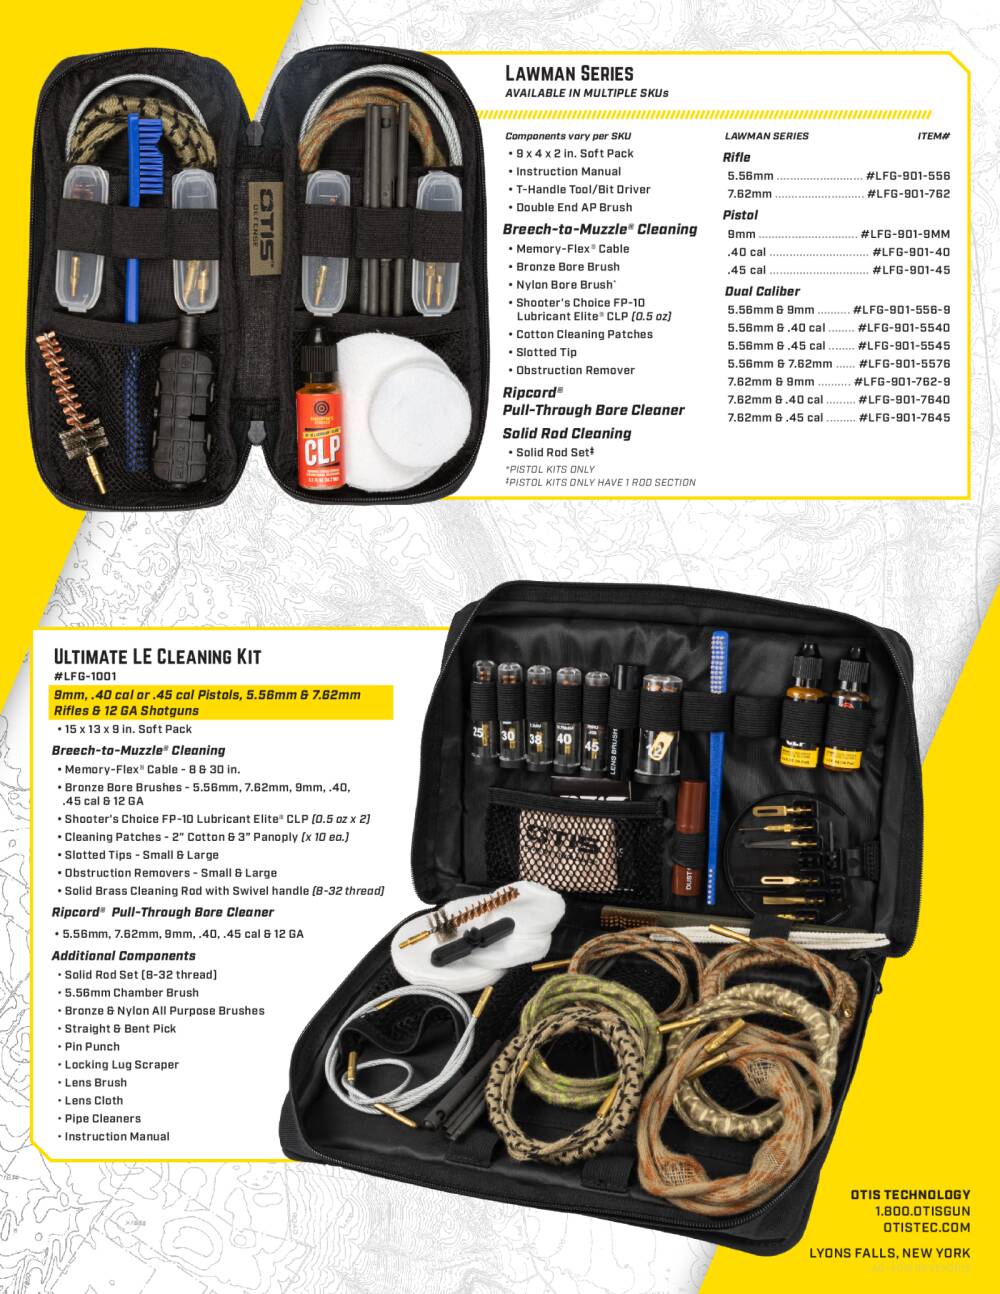  KOCASO Gun Cleaning Kit, Gun Cleaning Supplies for